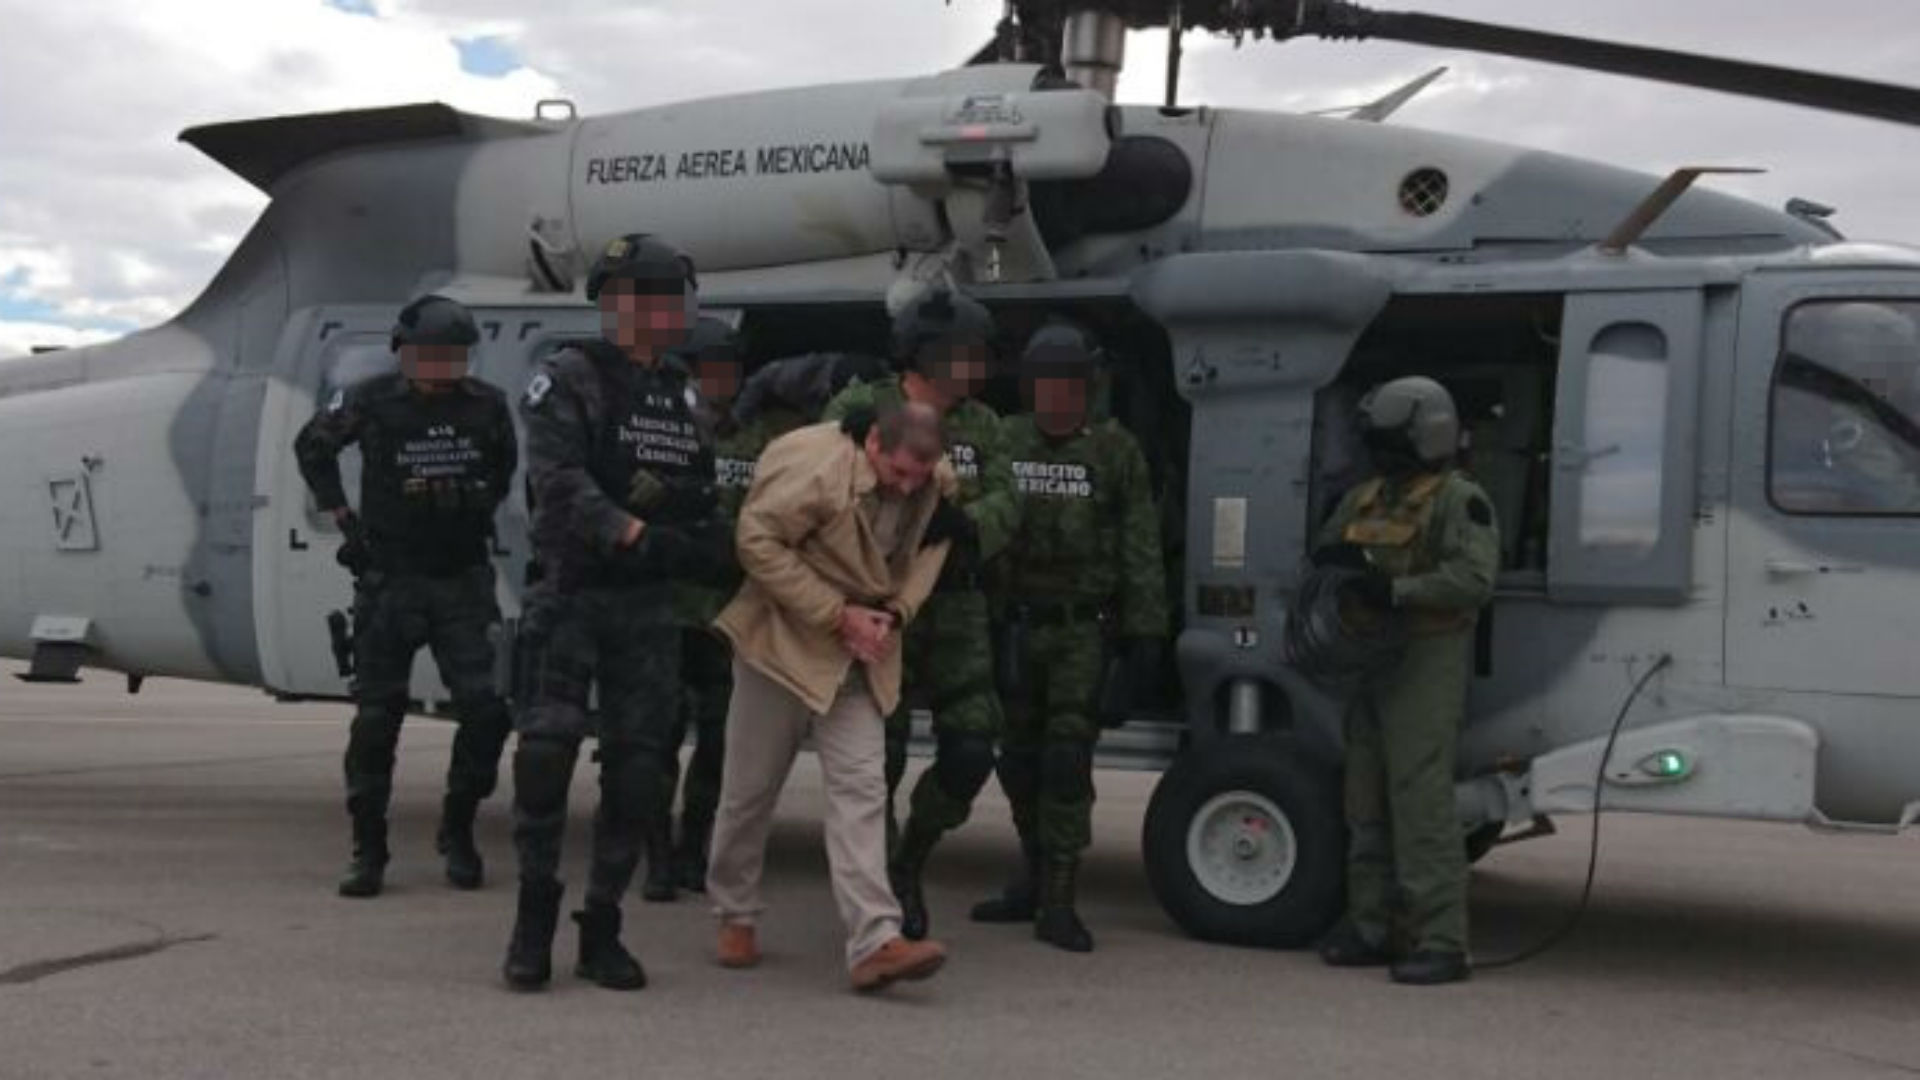 El Chapo Guzmán trasladado en helicóptero en México antes de su extradición a Estados Unidos (Foto: PGR México)